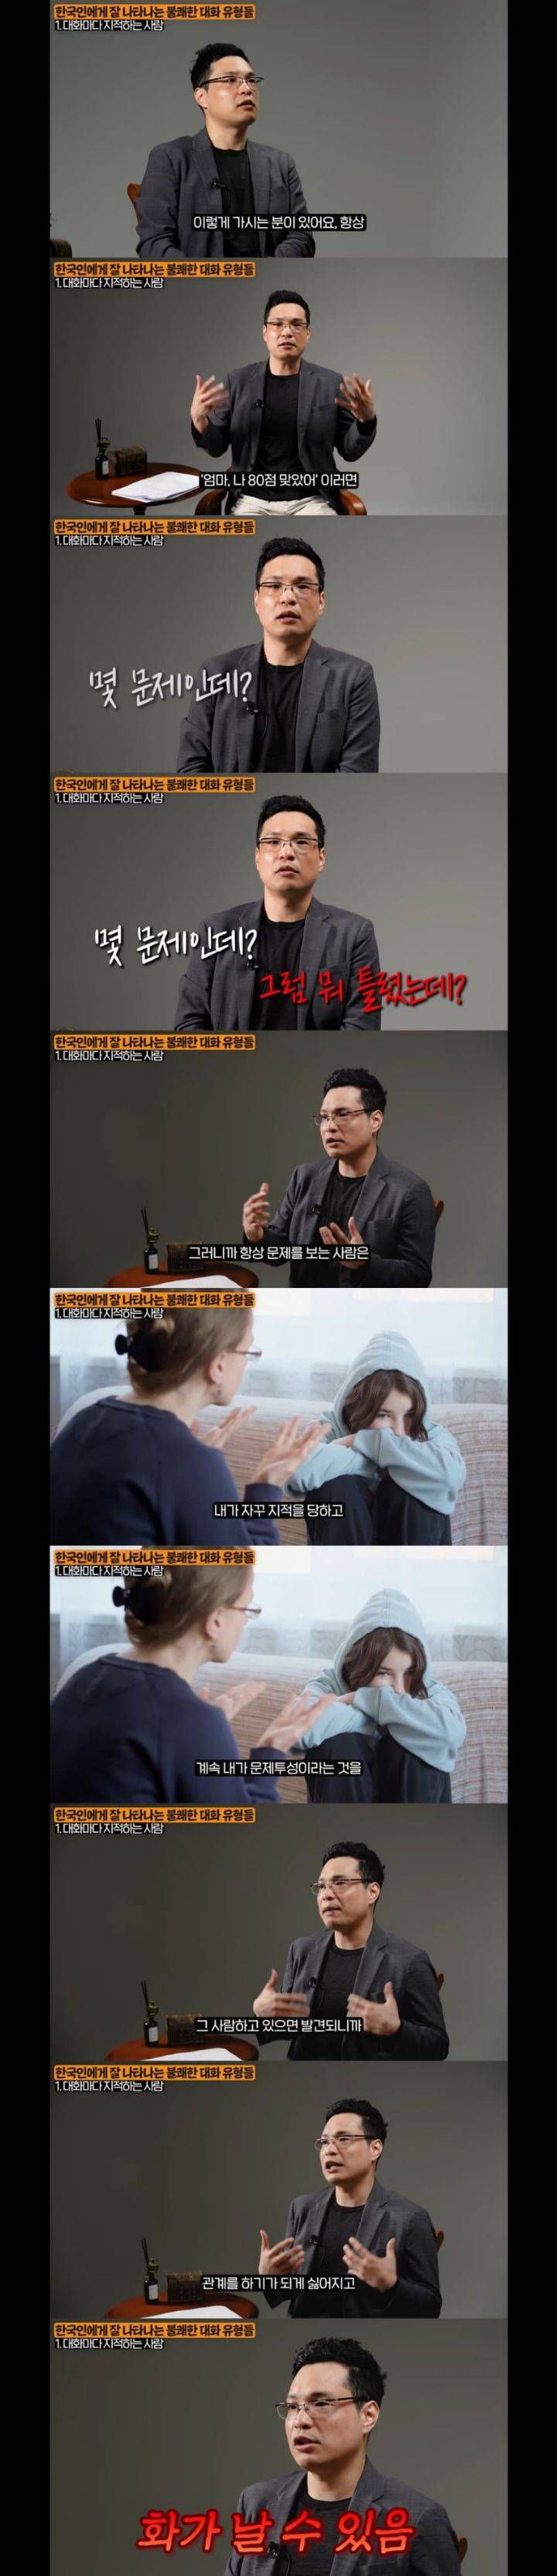 한국인에게 잘 나타나는 불쾌한 대화 유형들 | 인스티즈